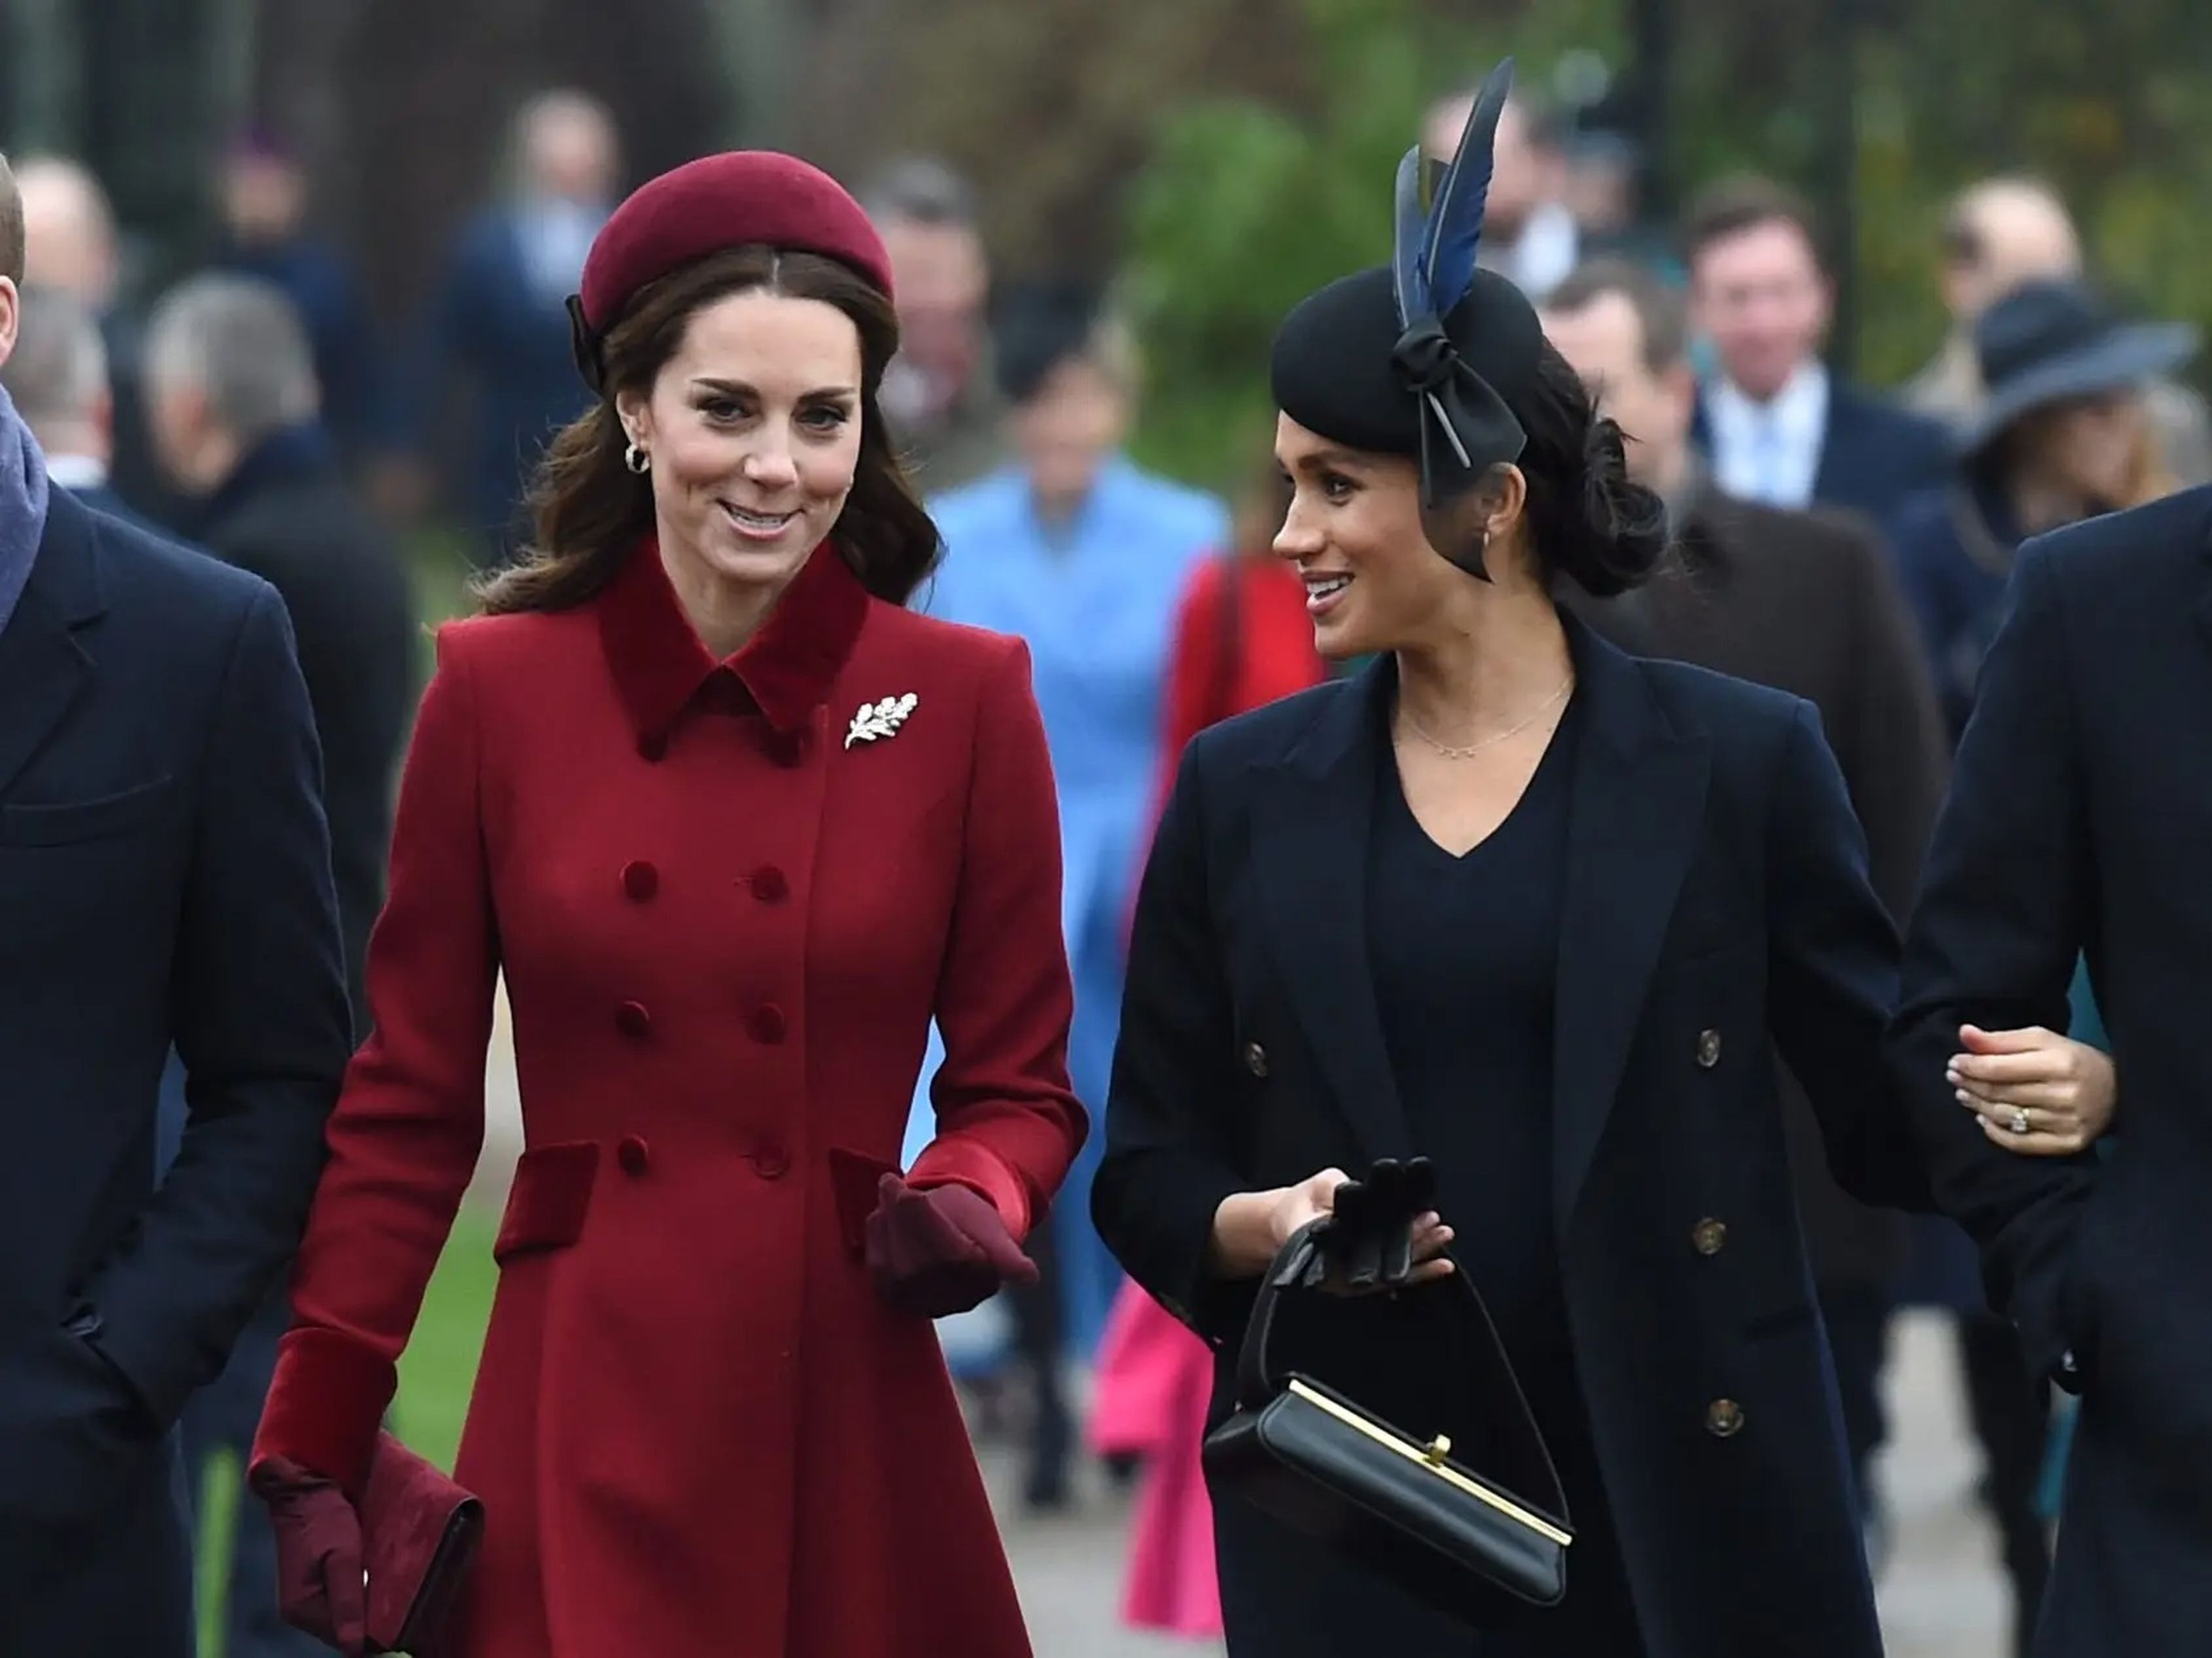 El príncipe William, Kate Middleton, Meghan Markle y el príncipe Harry asisten a los servicios de la iglesia en Navidad, 2018